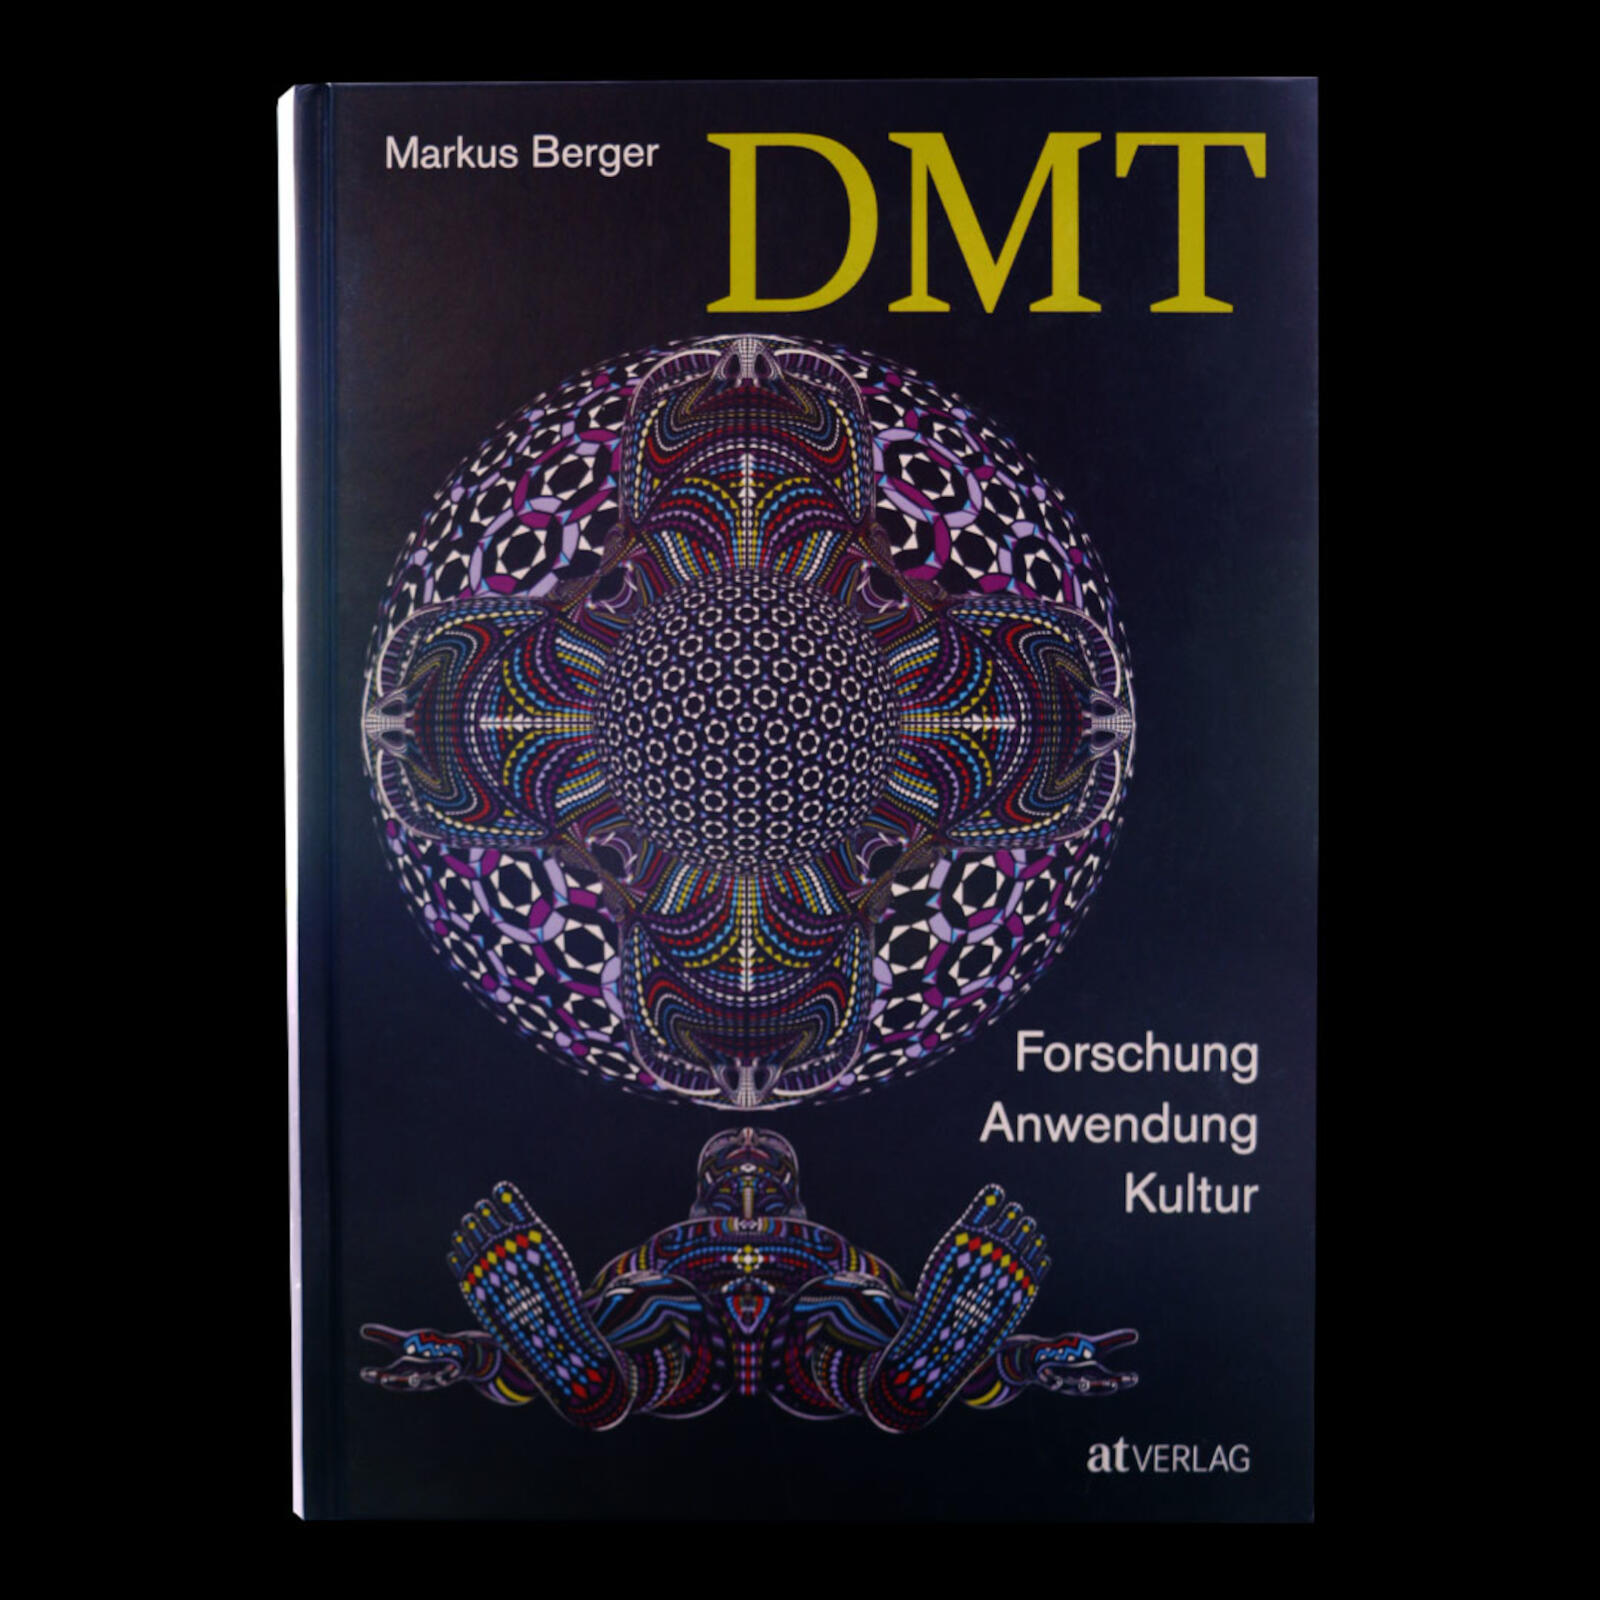 DMT - Forschung, Anwendung, Kultur